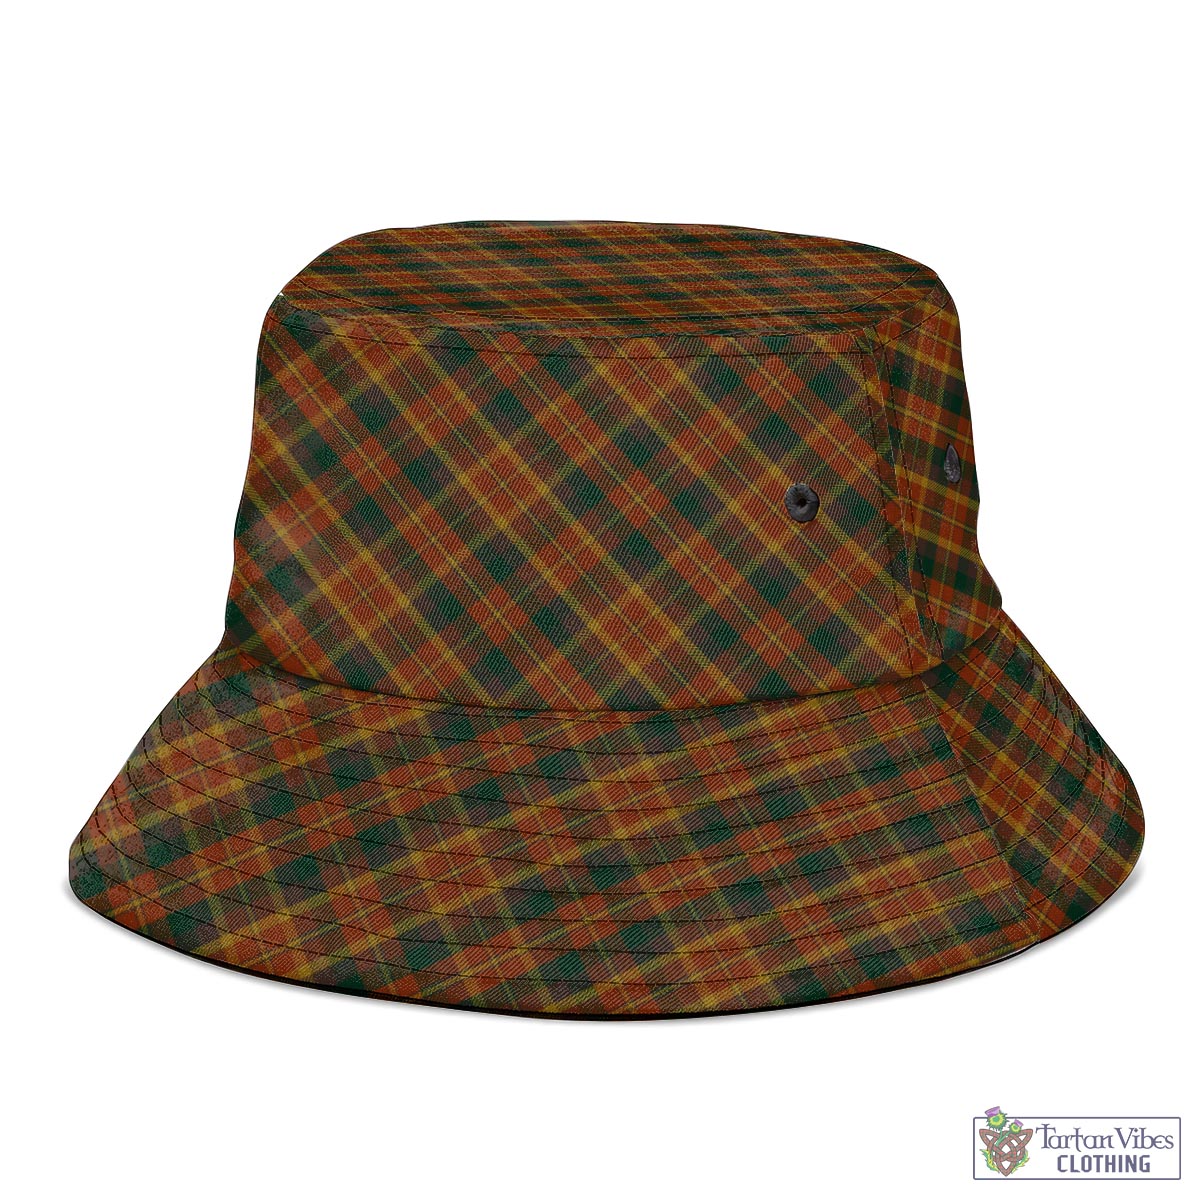 Tartan Vibes Clothing Monaghan County Ireland Tartan Bucket Hat